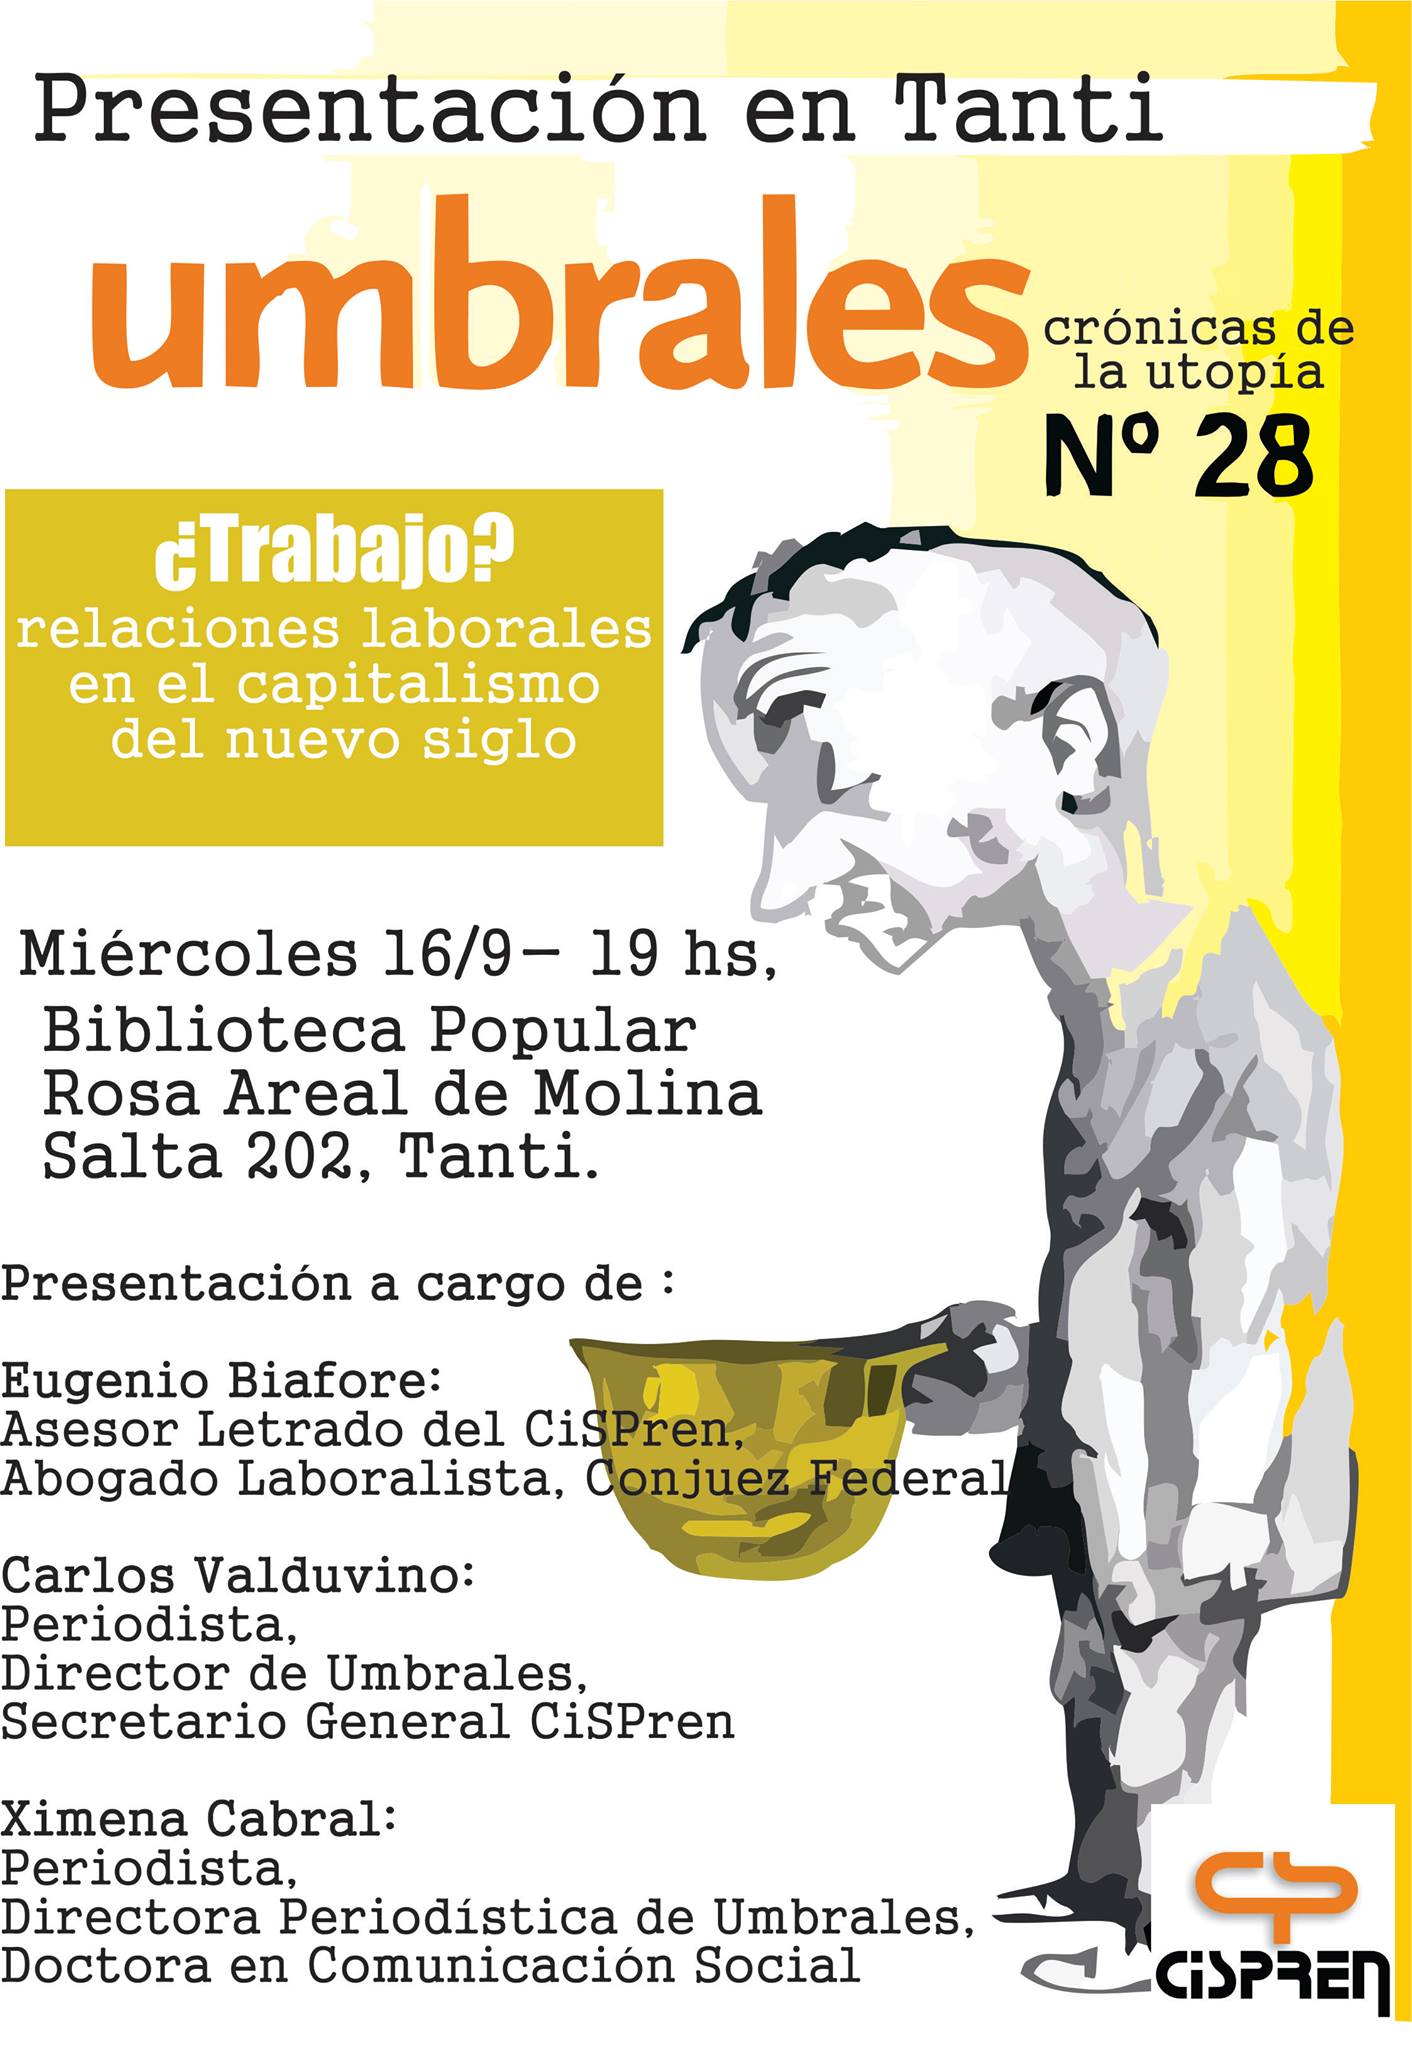 Se presentará la revista Umbrales en Tanti